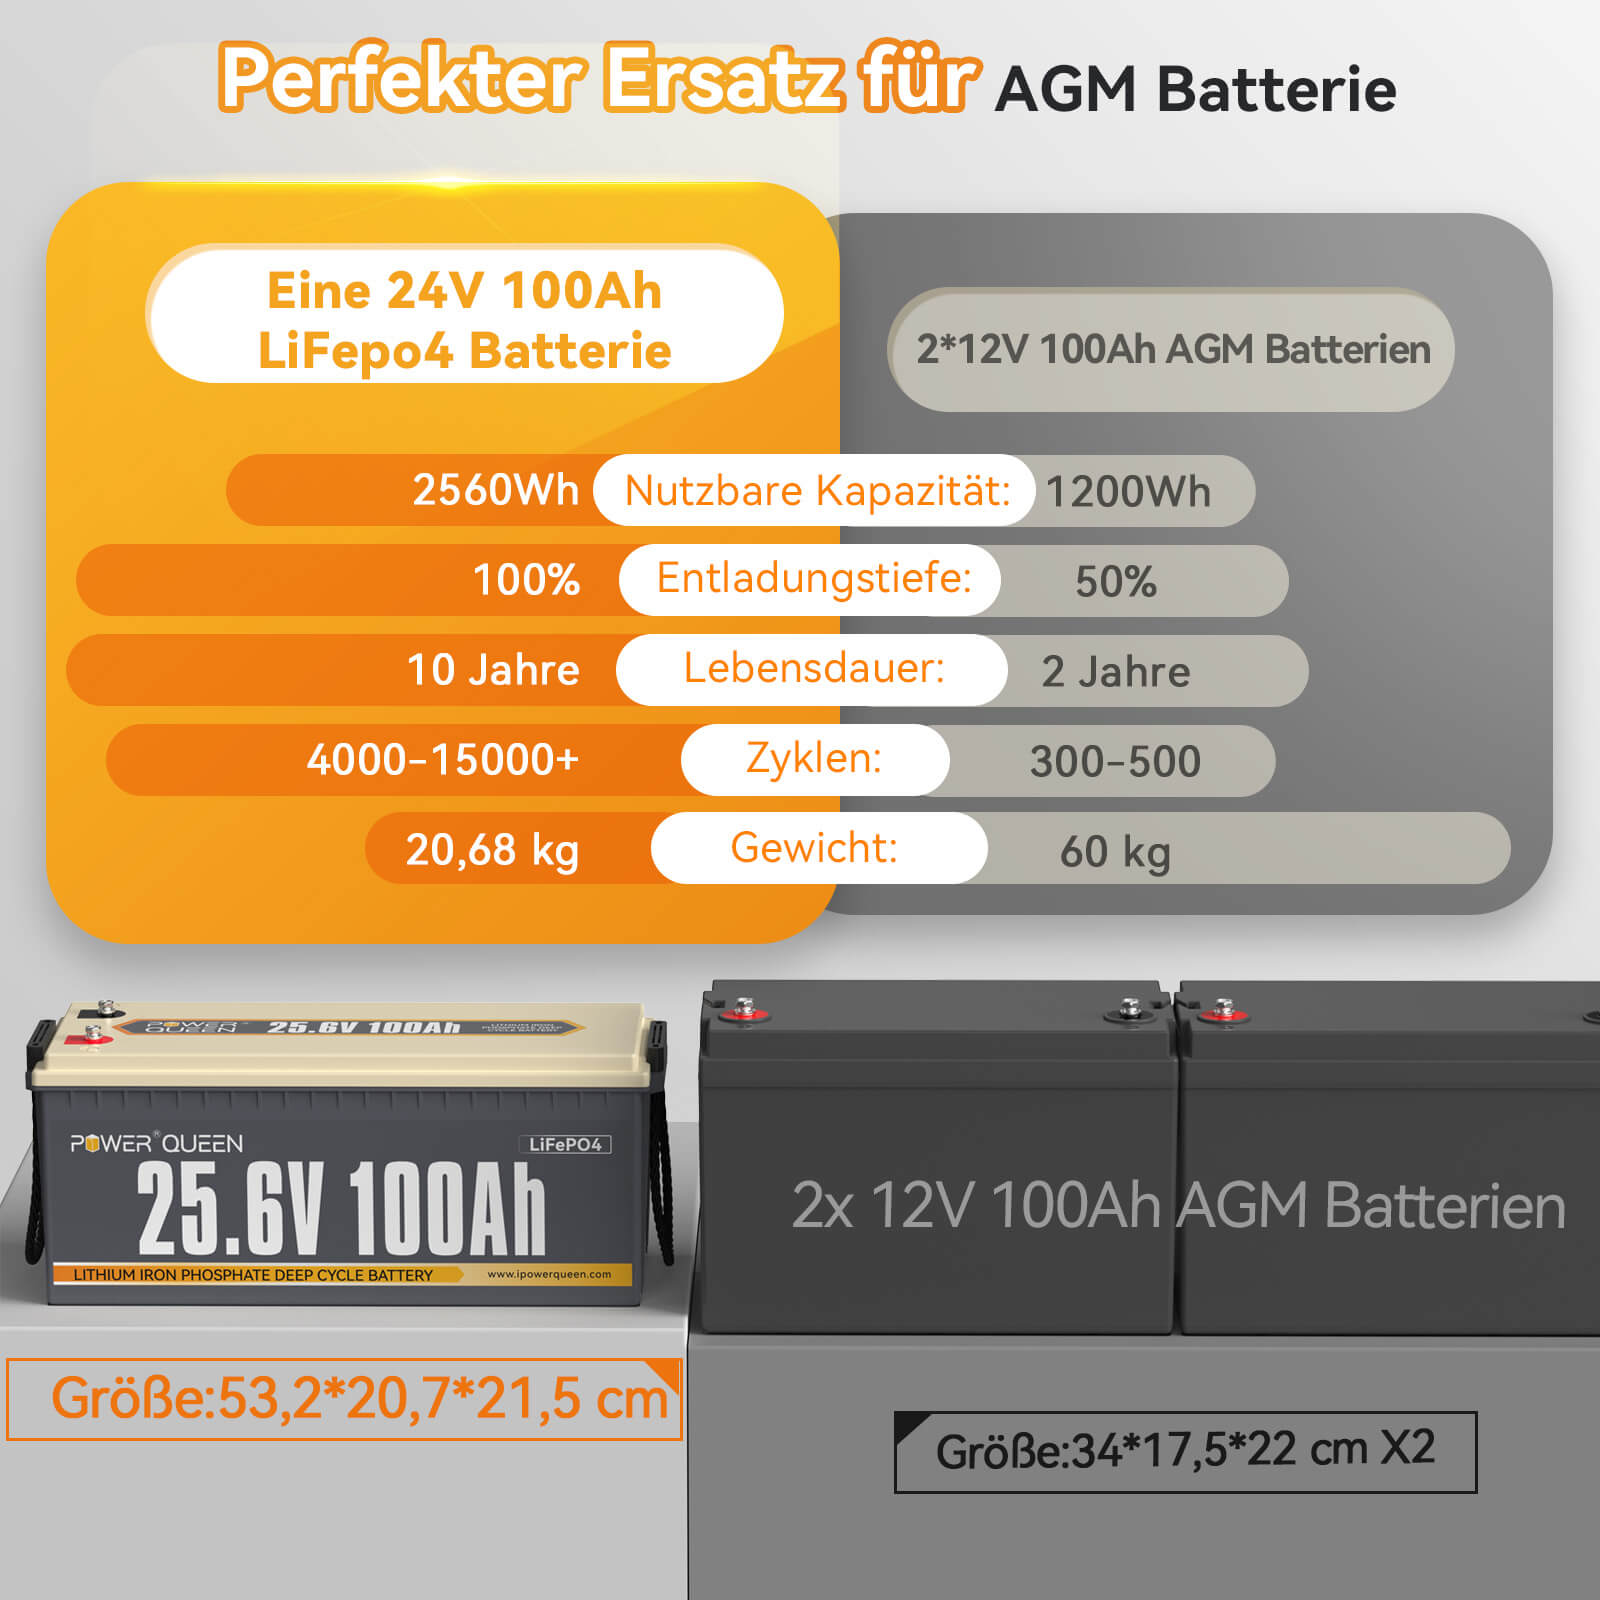 【Als nieuw】Power Queen 25,6V 100Ah LiFePO4-batterij, ingebouwd 100A BMS